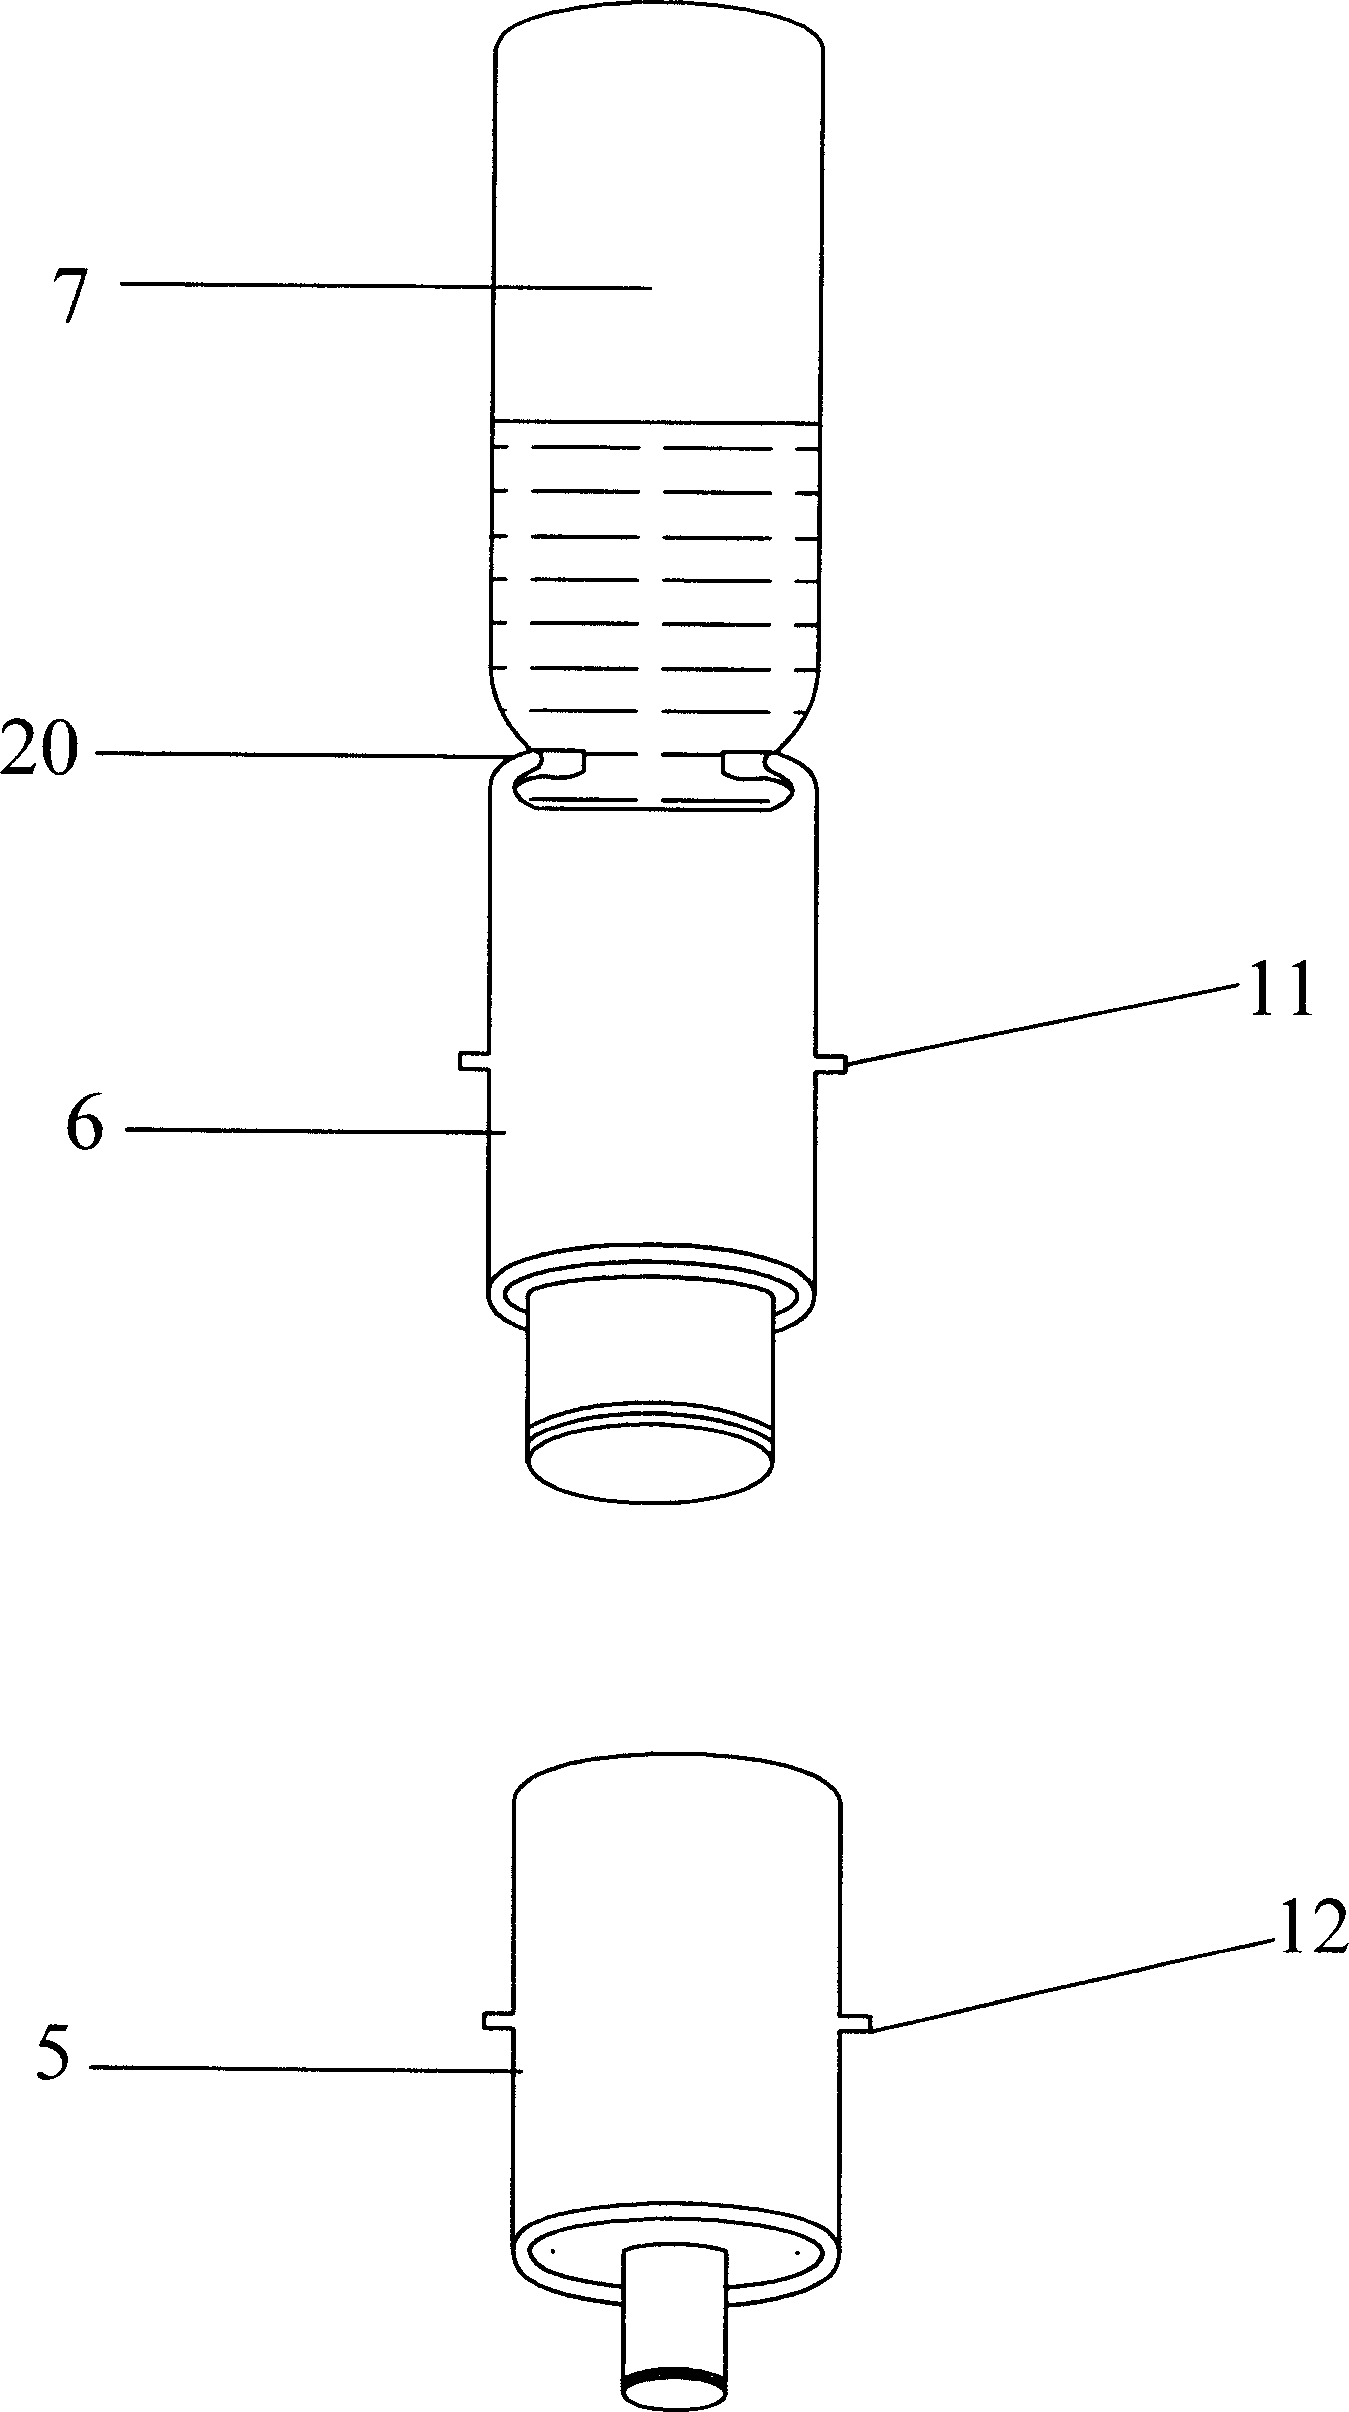 Automatic injection powder mixing syringe